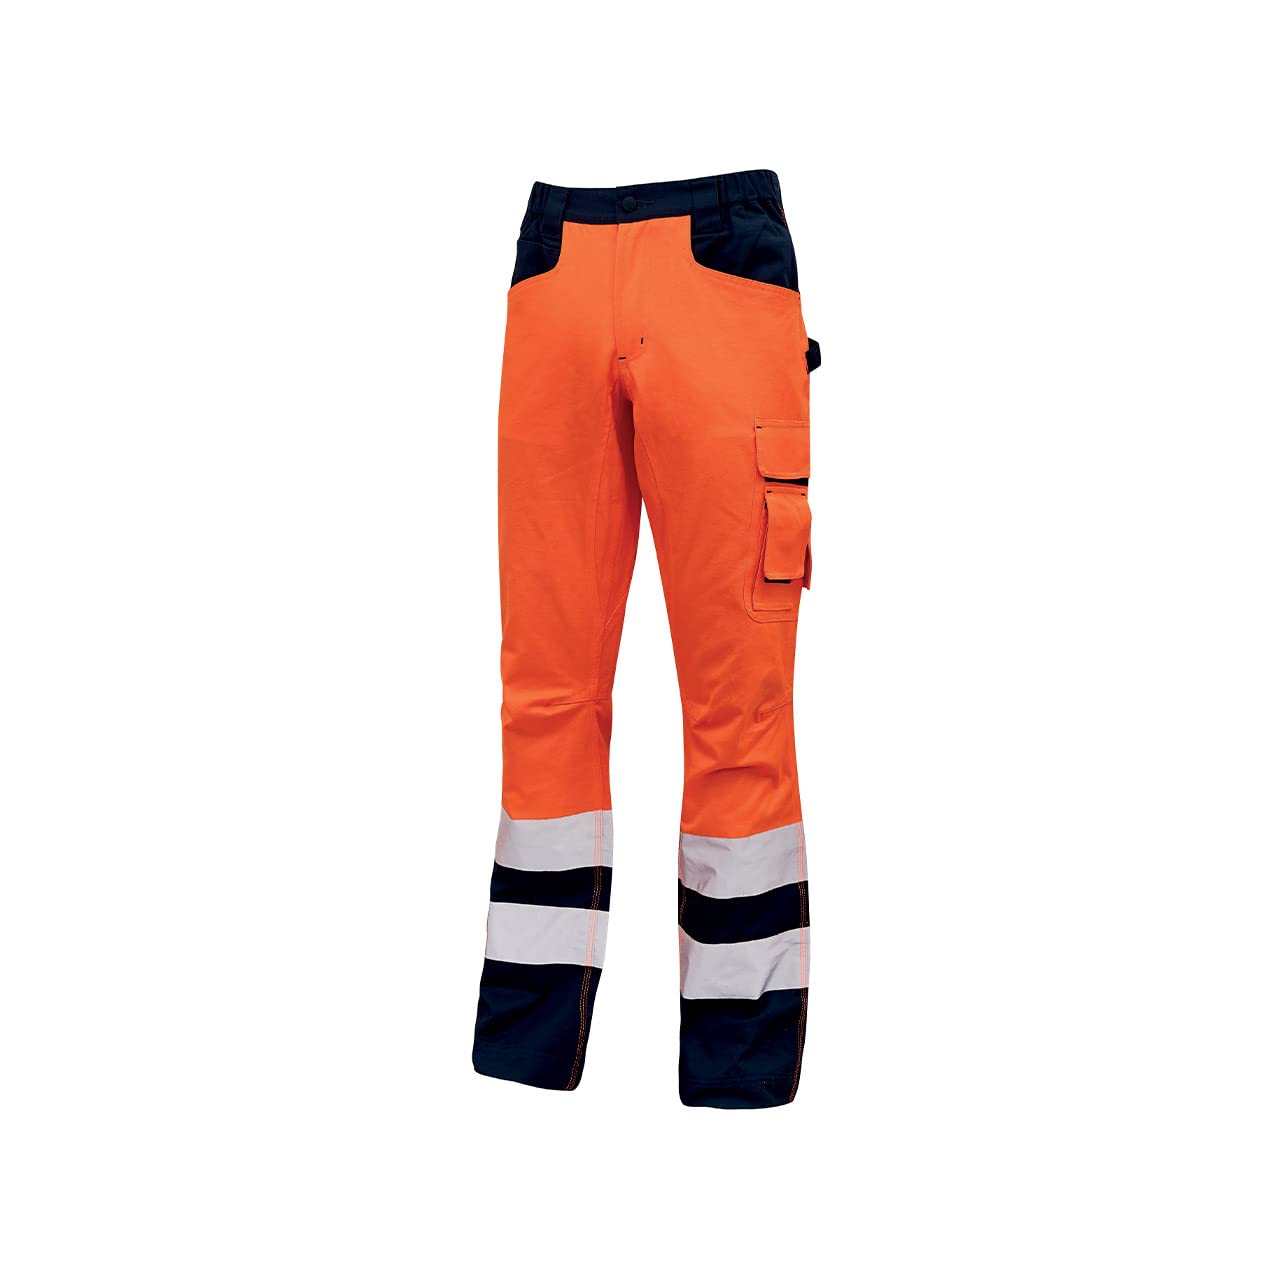 Pantalone alta visibilita light arancione fluo tg.l